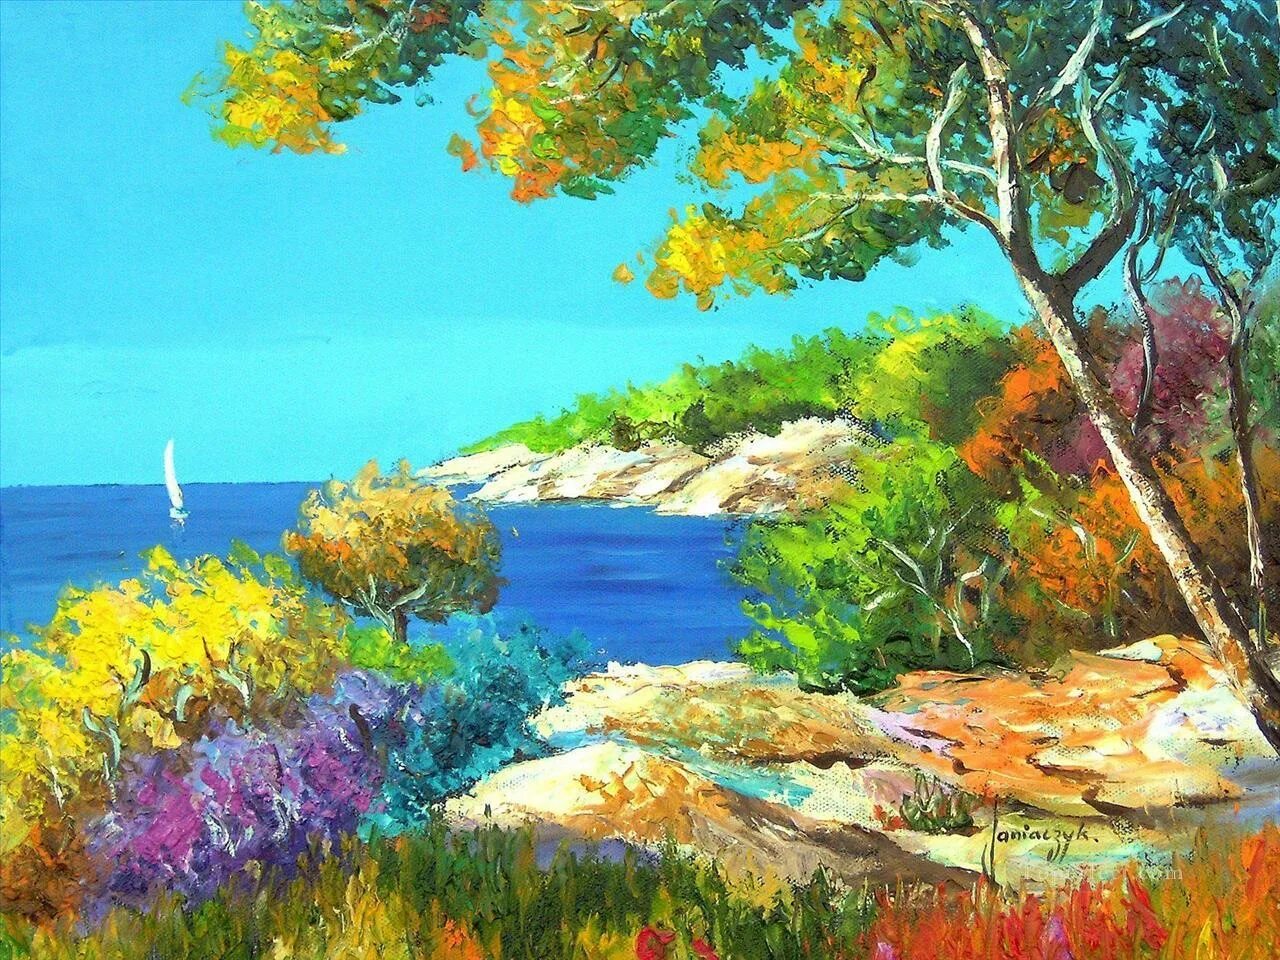 Painted landscape